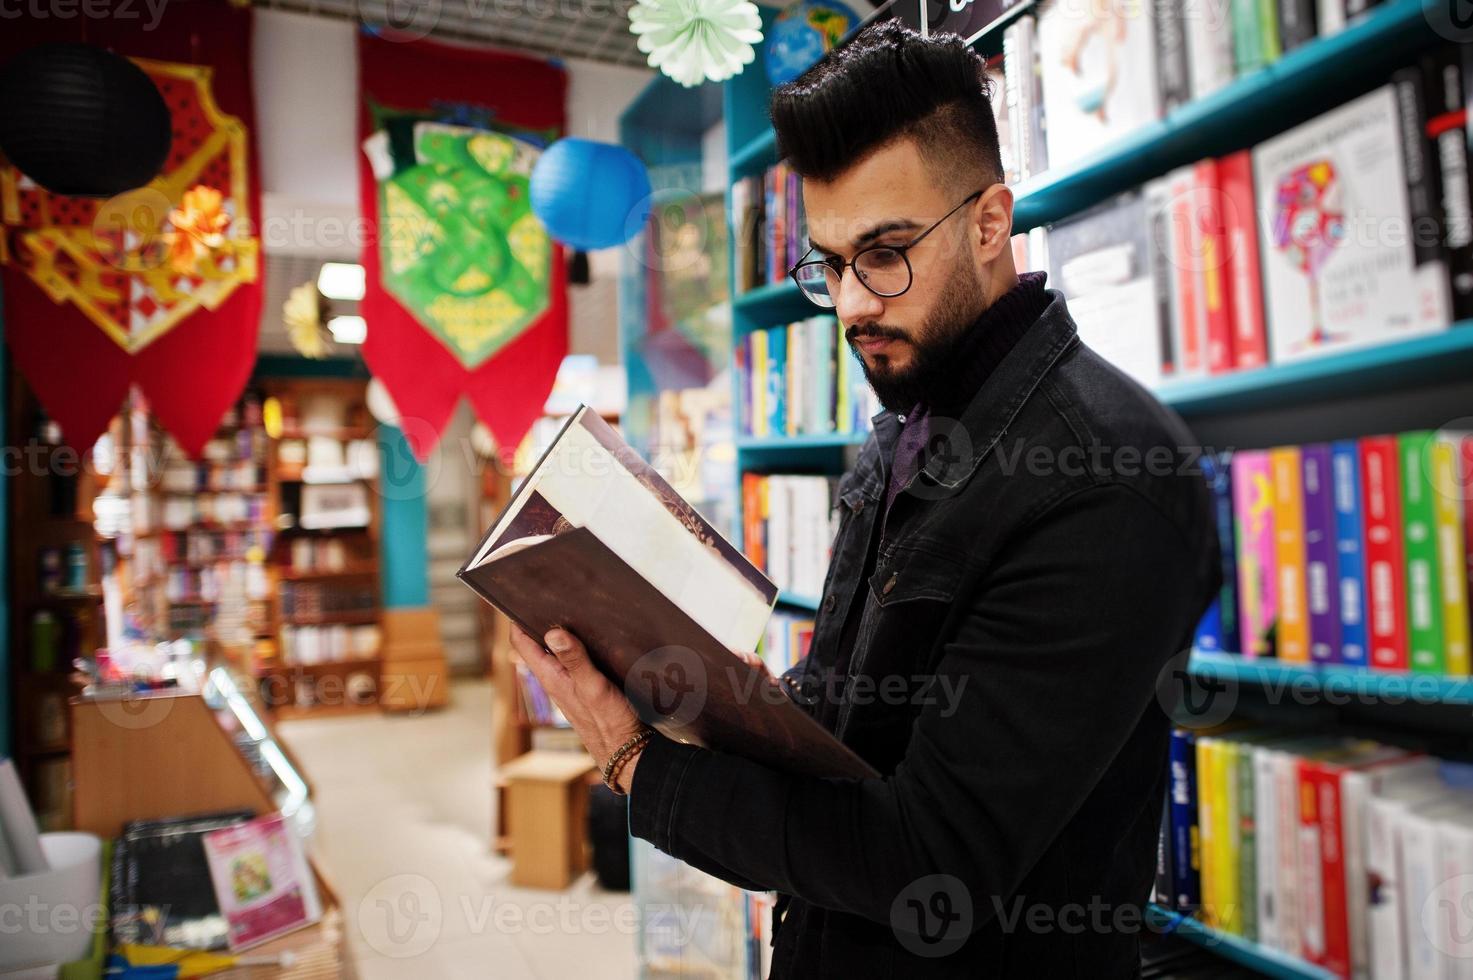 studente arabo alto e intelligente, indossa una giacca di jeans nera e occhiali da vista, in biblioteca con un libro a portata di mano. foto